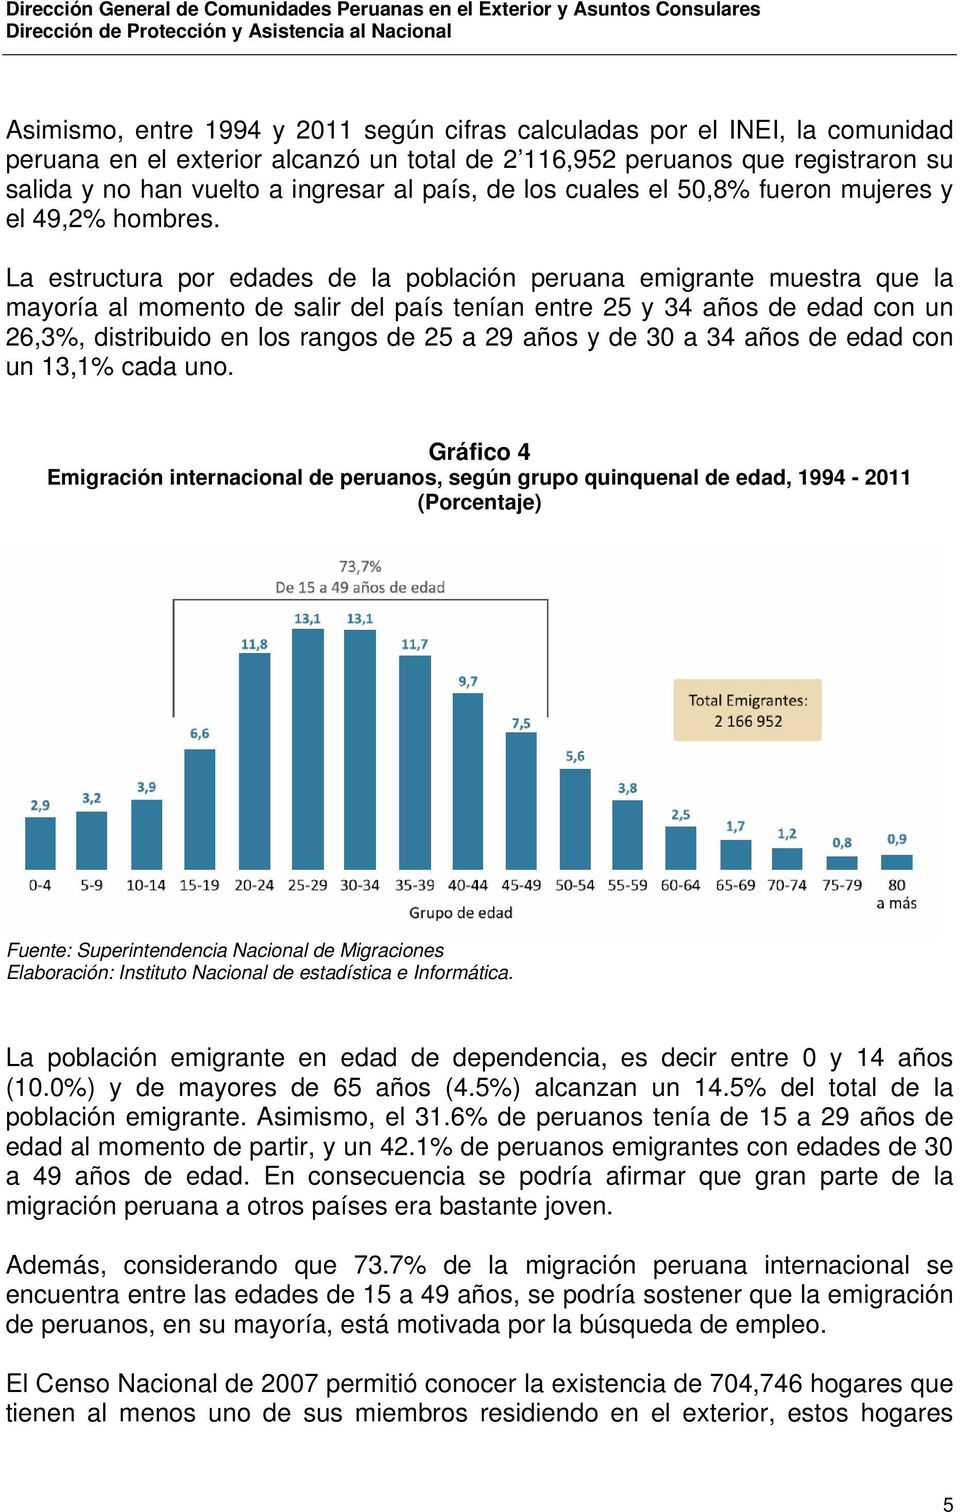 La estructura por edades de la población peruana emigrante muestra que la mayoría al momento de salir del país tenían entre 25 y 34 años de edad con un 26,3%, distribuido en los rangos de 25 a 29